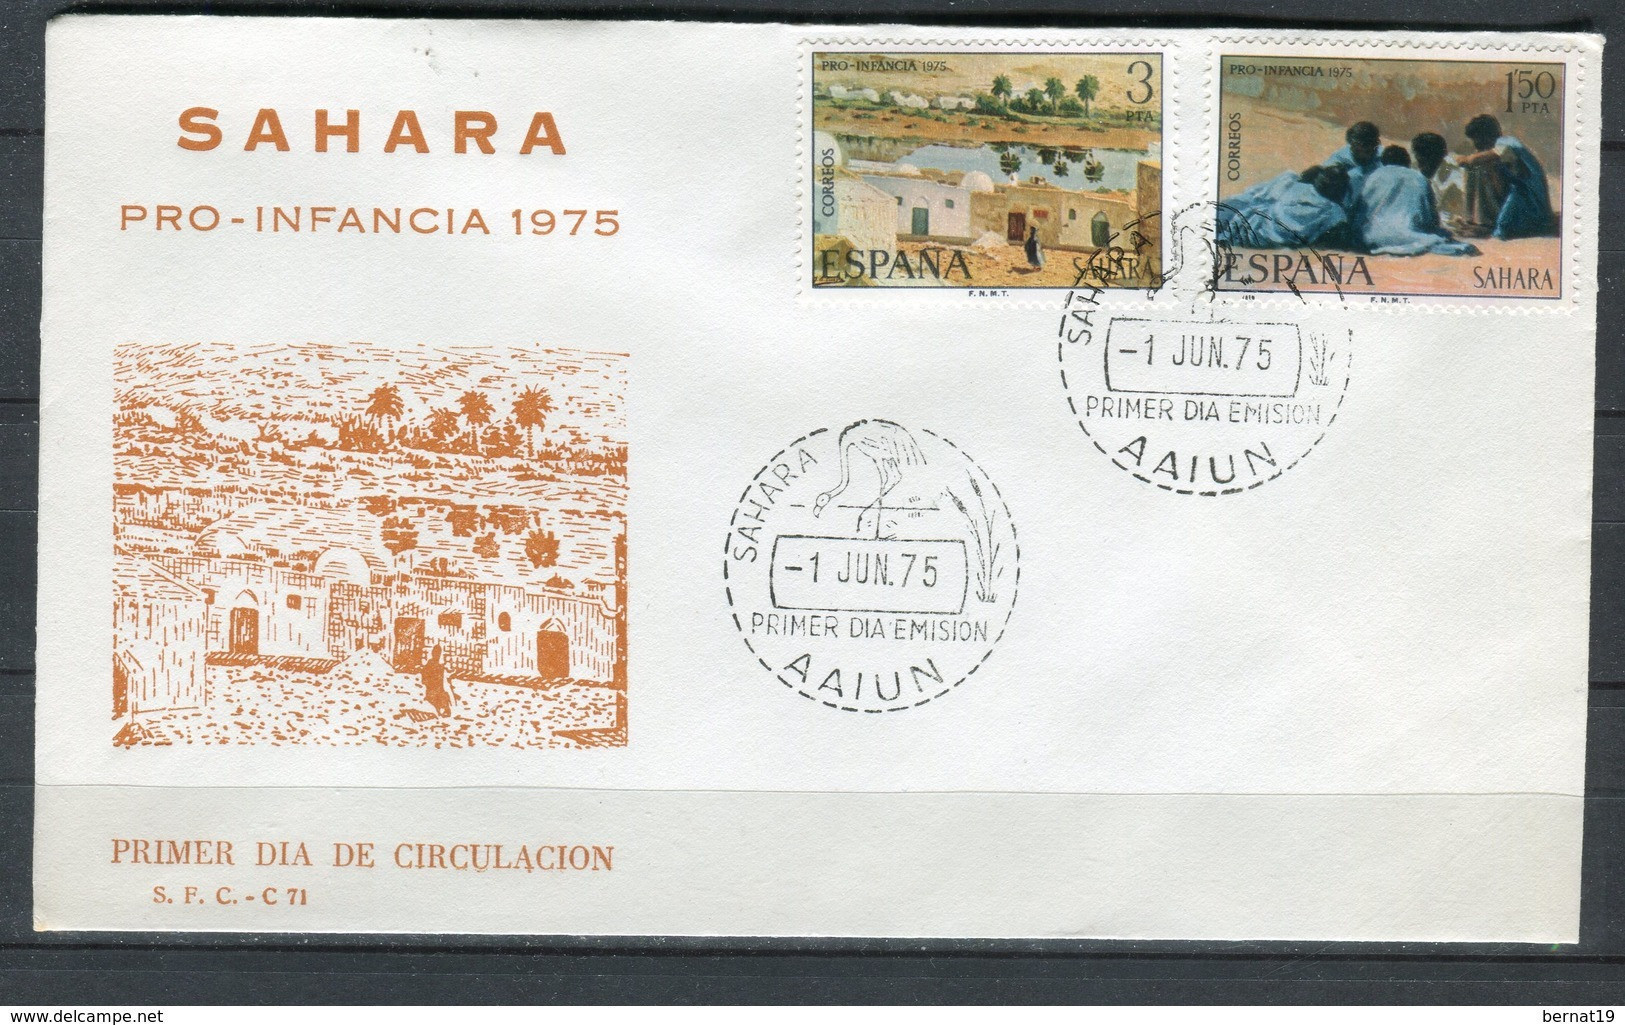 Sahara 1975. Edifil 320-21 FDC. - Spanish Sahara